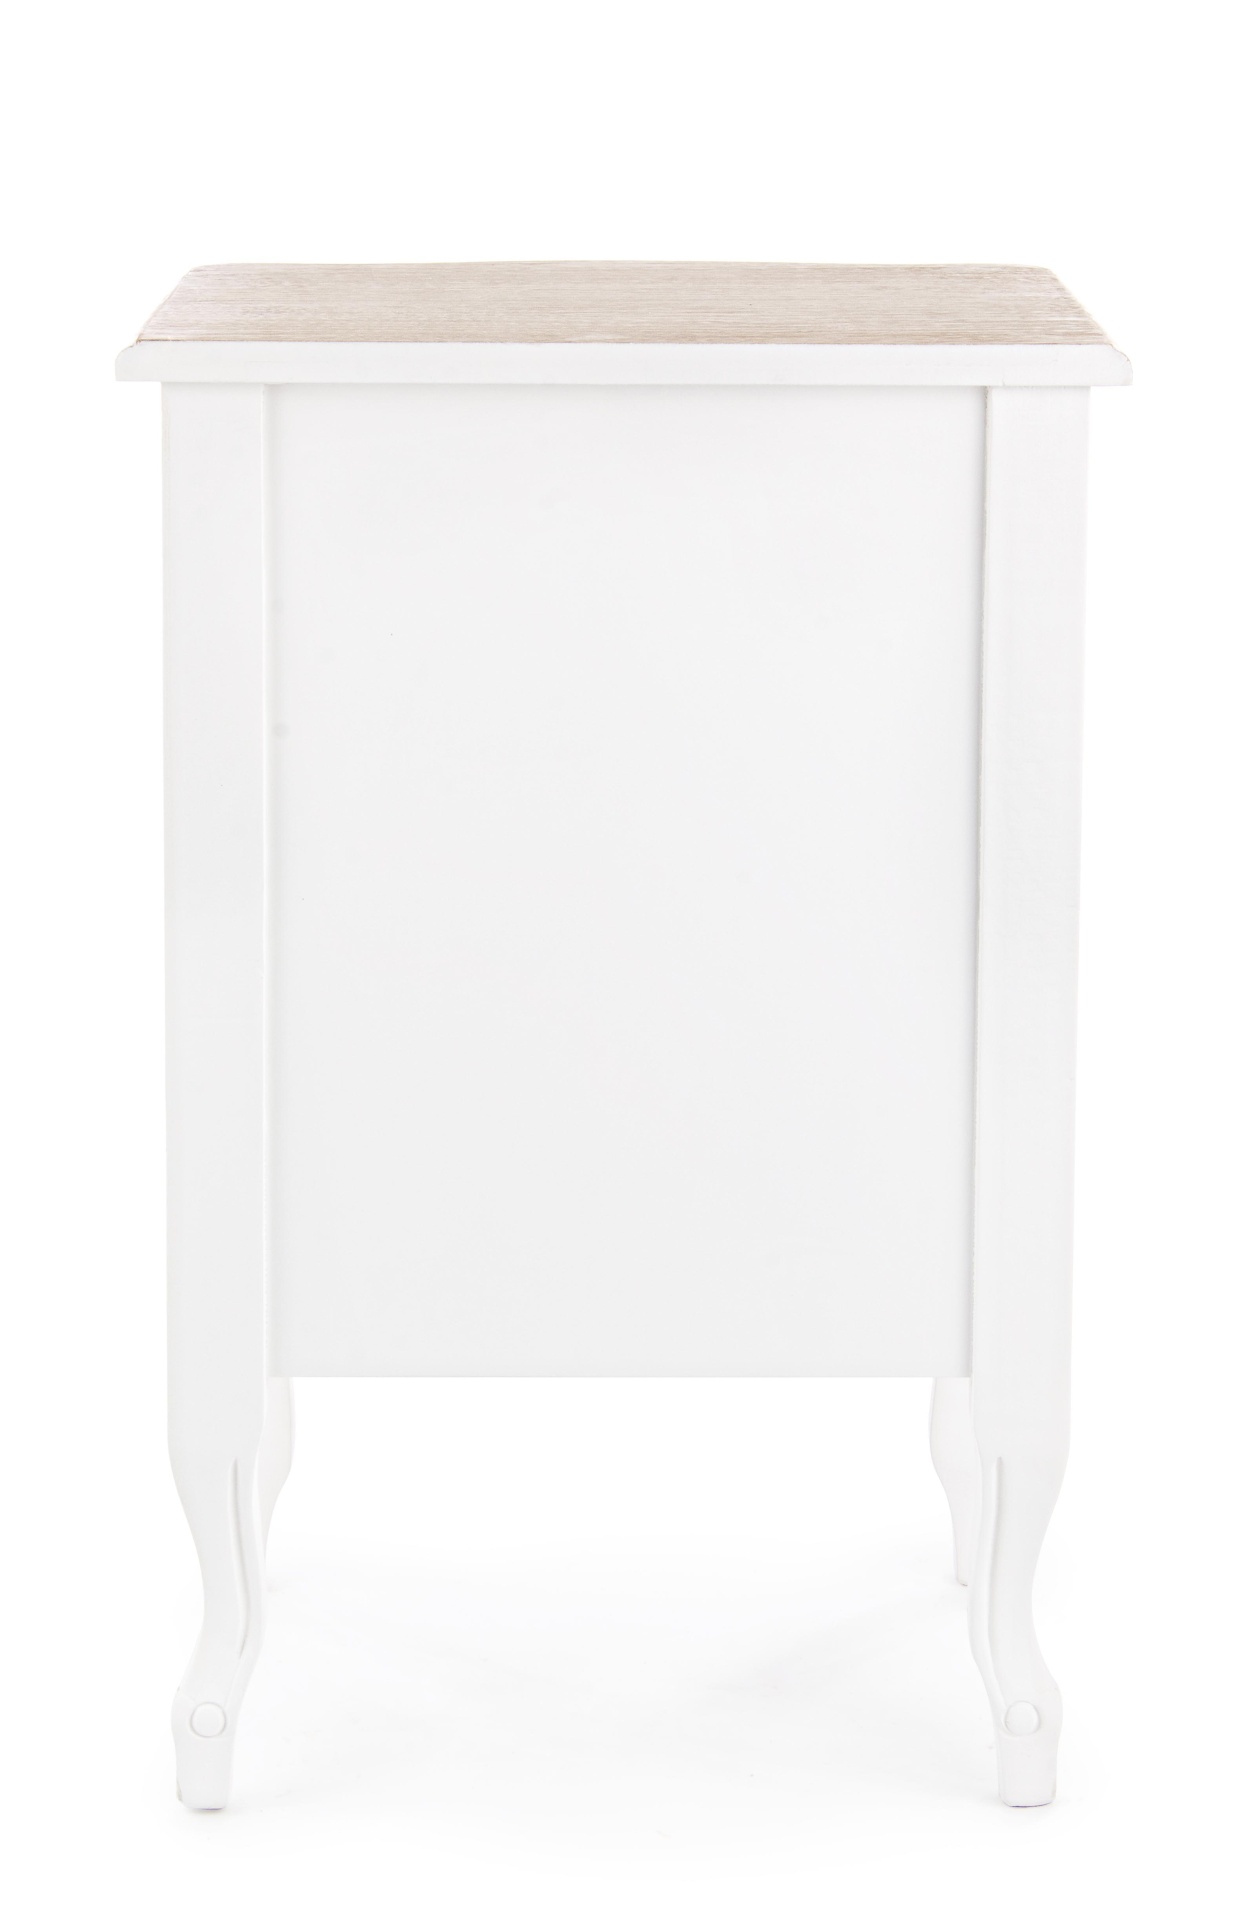 Der Nachttisch Justine überzeugt mit seinem klassischen Design. Gefertigt wurde er aus Paulowniaholz, welches einen weißen Farbton besitzt. Das Gestell ist auch aus Paulowniaholz. Der Nachttisch verfügt über eine Schublade und eine Tür. Die Breite beträgt